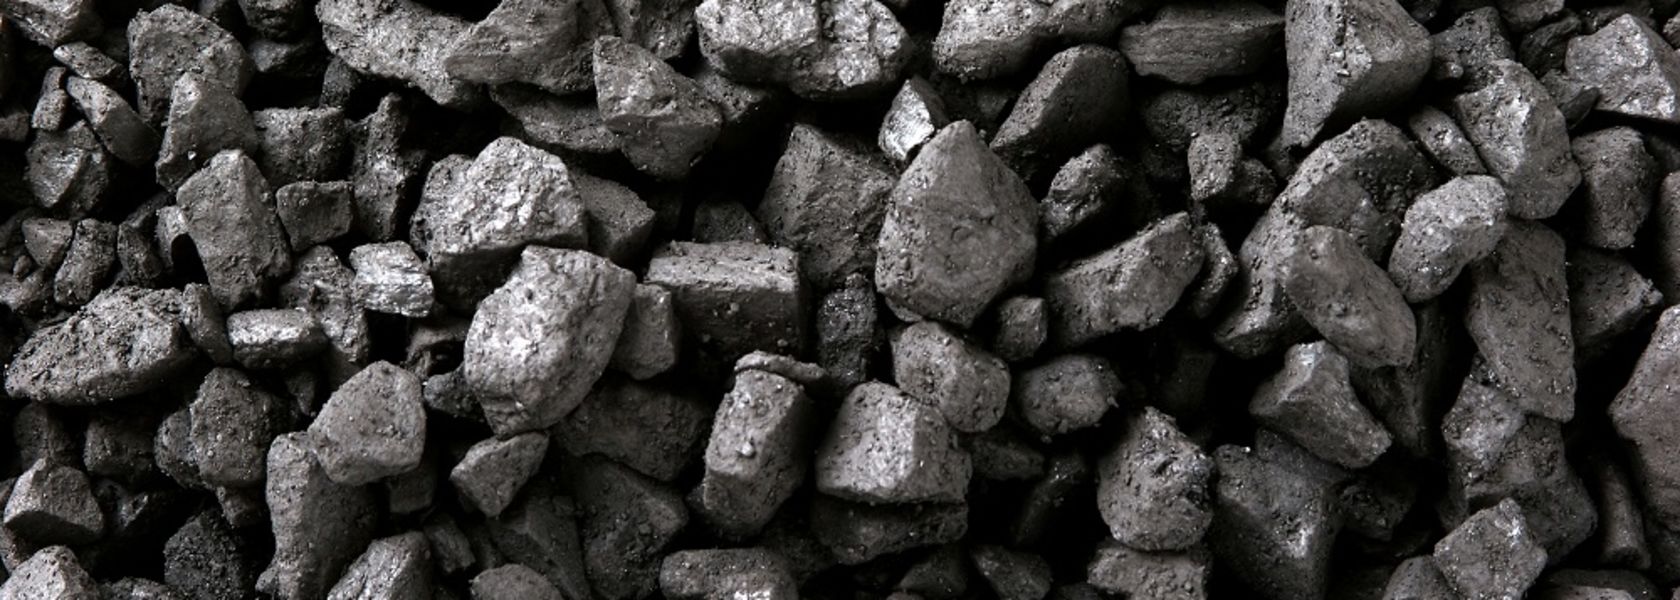 botswana coal